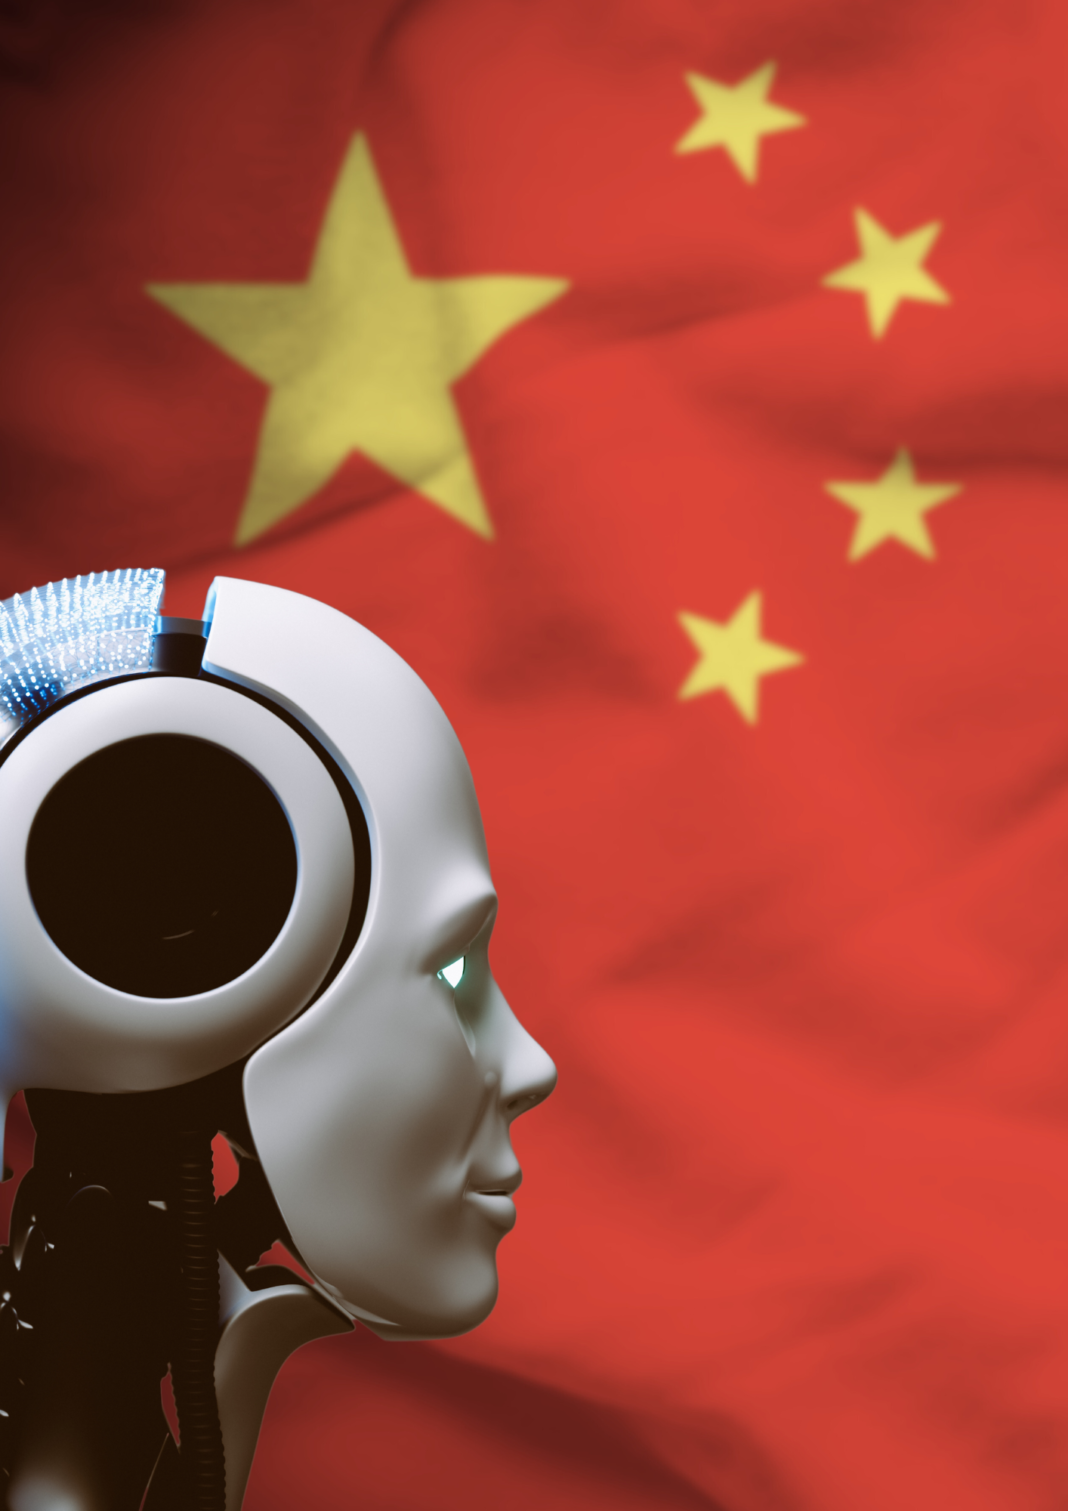 China l Propagación de desinformación global l Chainlatin.com l Portada